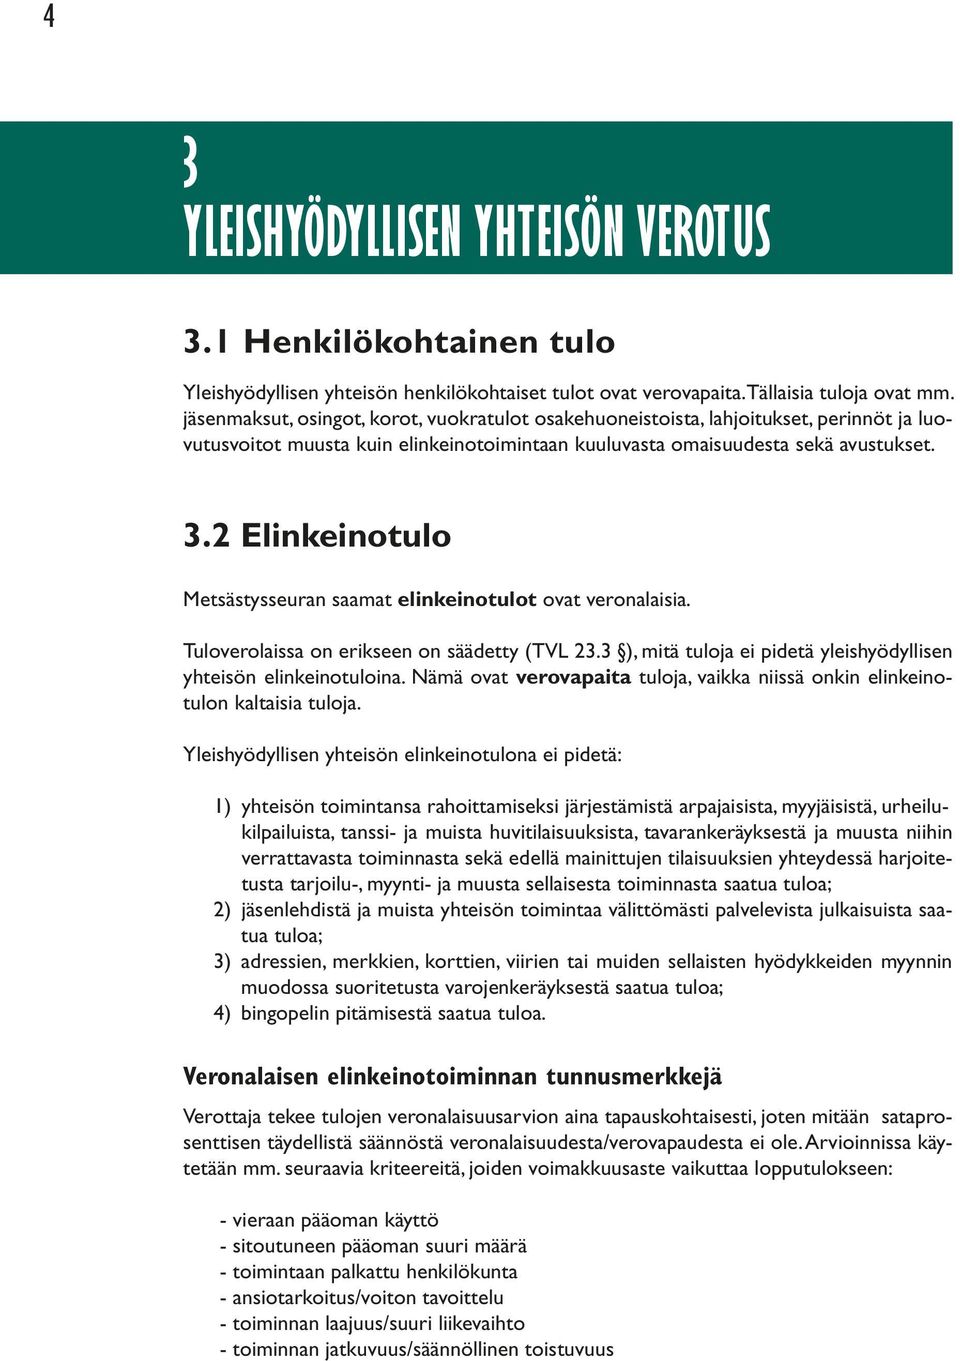 2 Elinkeinotulo Metsästysseuran saamat elinkeinotulot ovat veronalaisia. Tuloverolaissa on erikseen on säädetty (TVL 23.3 ), mitä tuloja ei pidetä yleishyödyllisen yhteisön elinkeinotuloina.